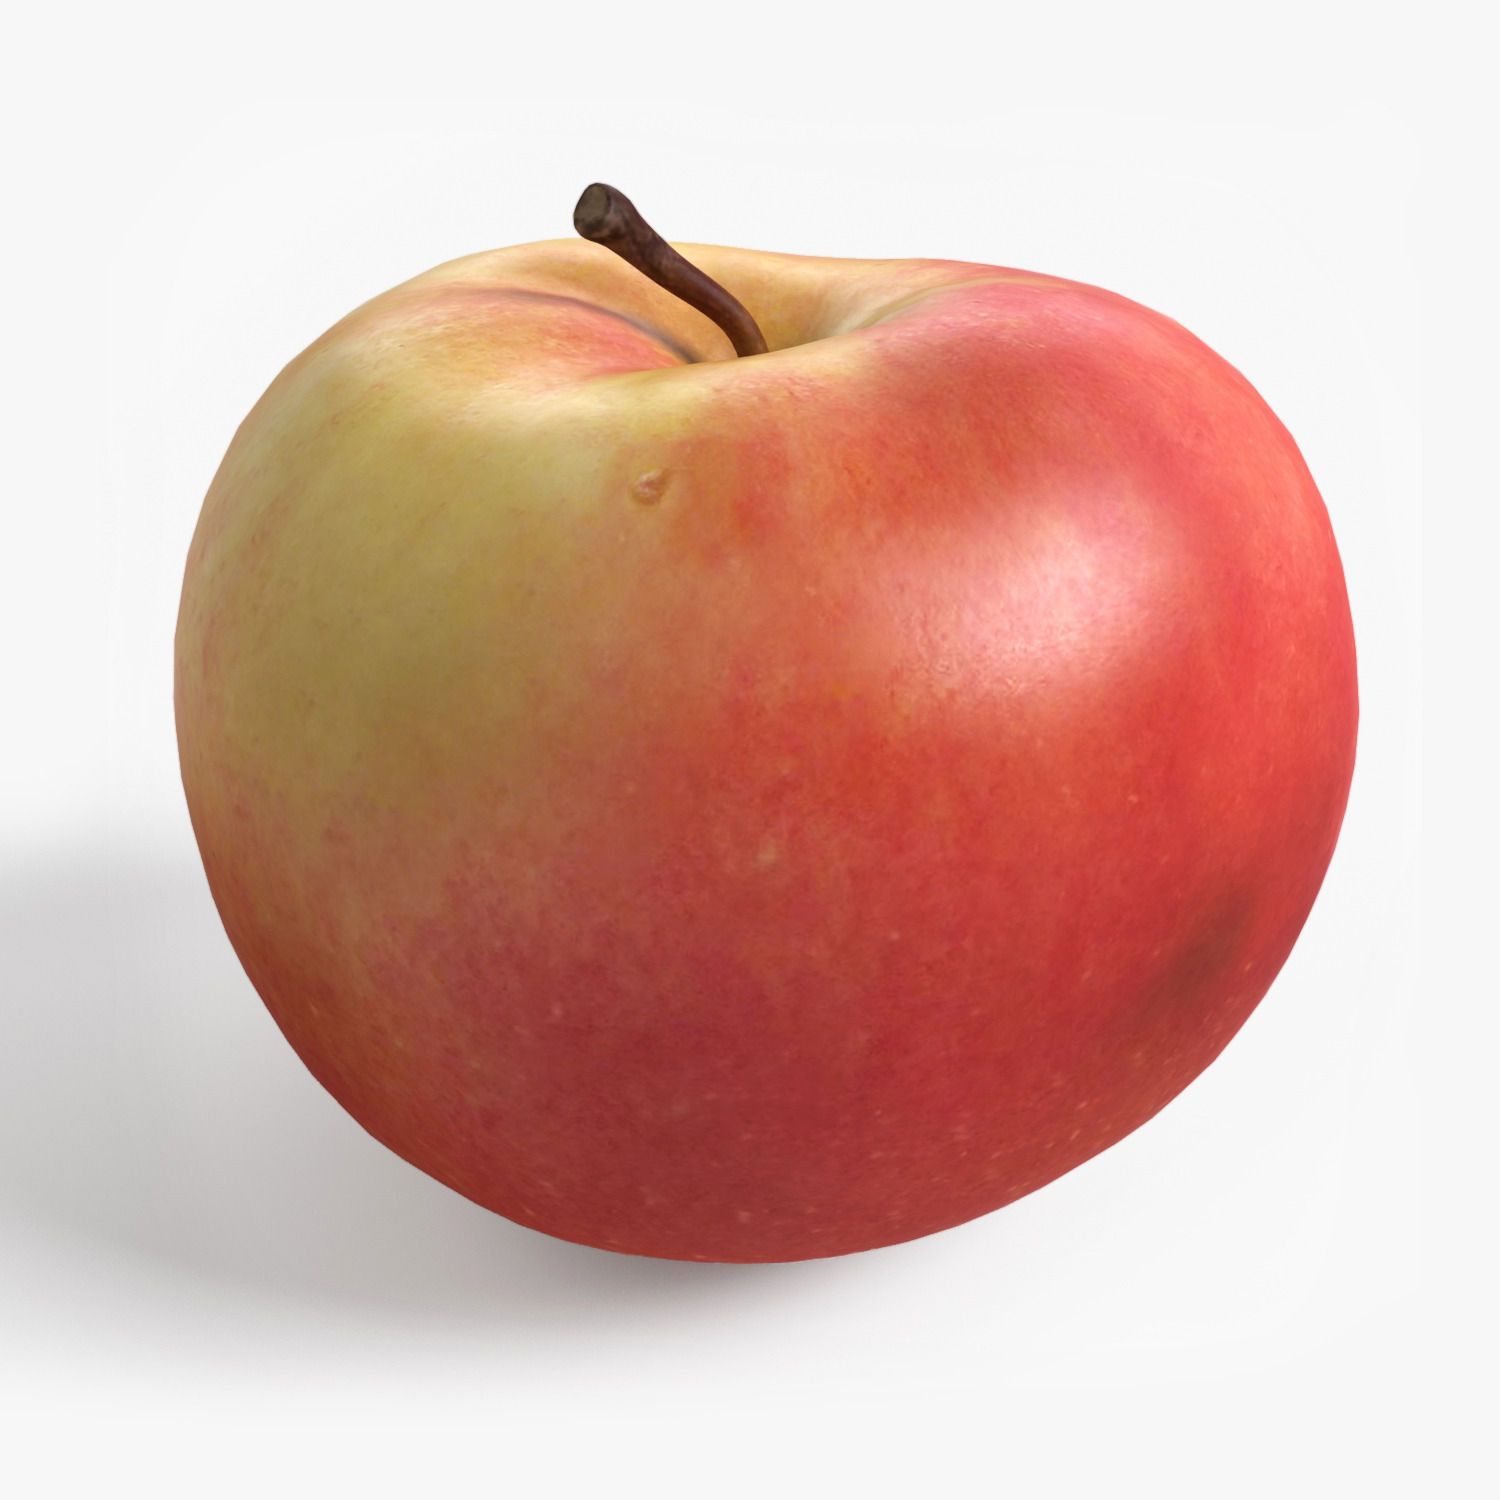 Включи 3 яблока. Apple 3d model. 3d модель Apple. Яблоко. Яблоко 3д модель.